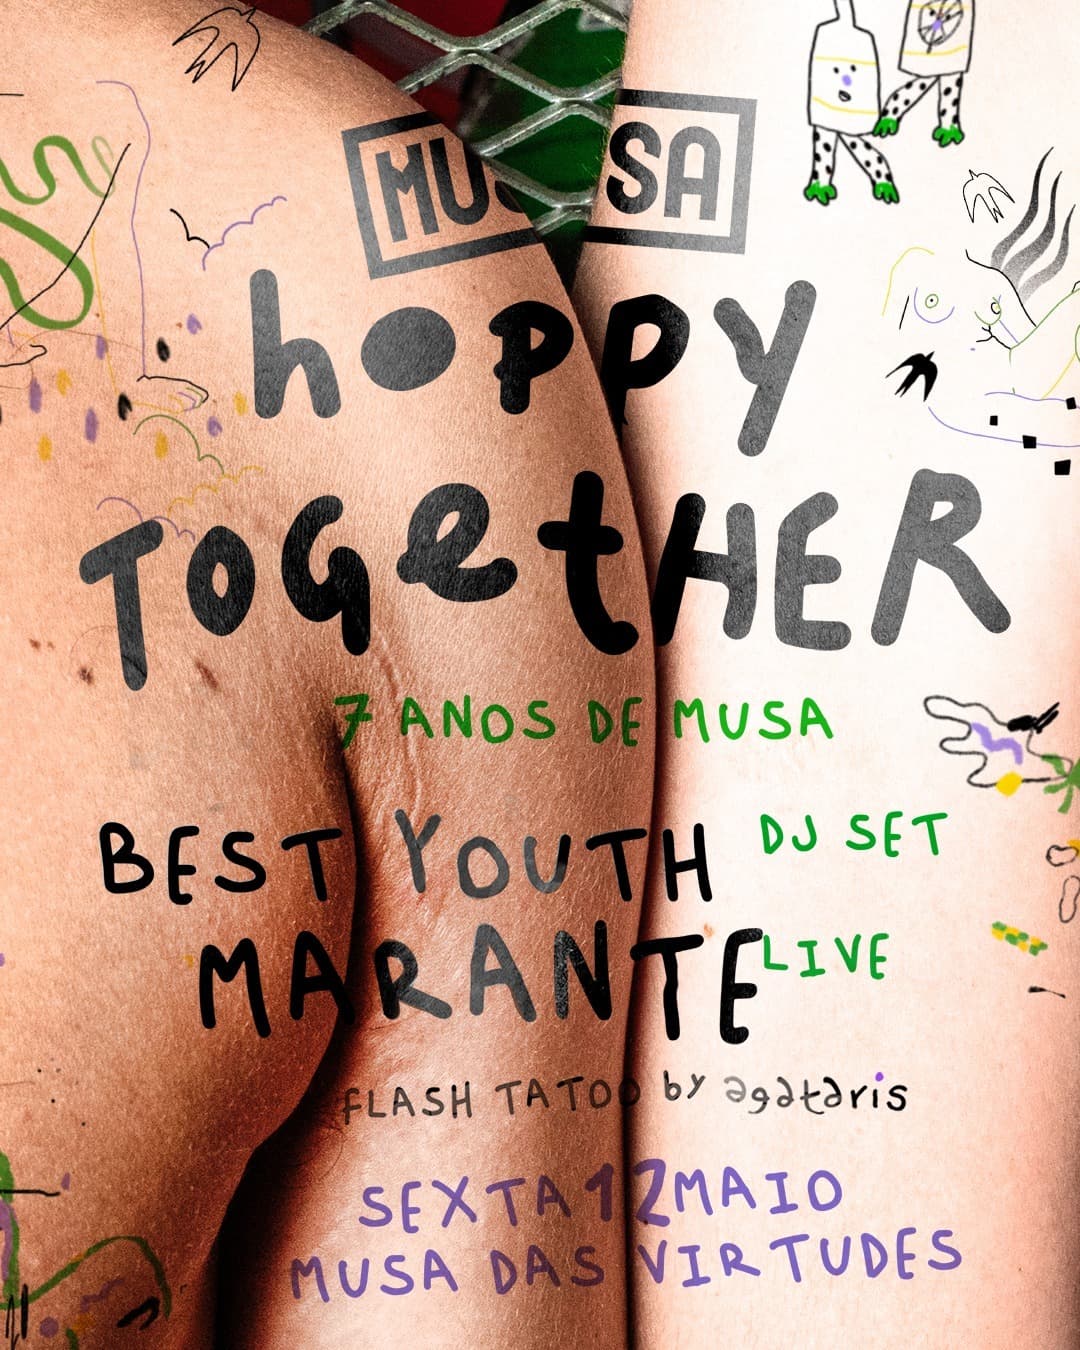 Hoppy Together - Musa das Virtudes